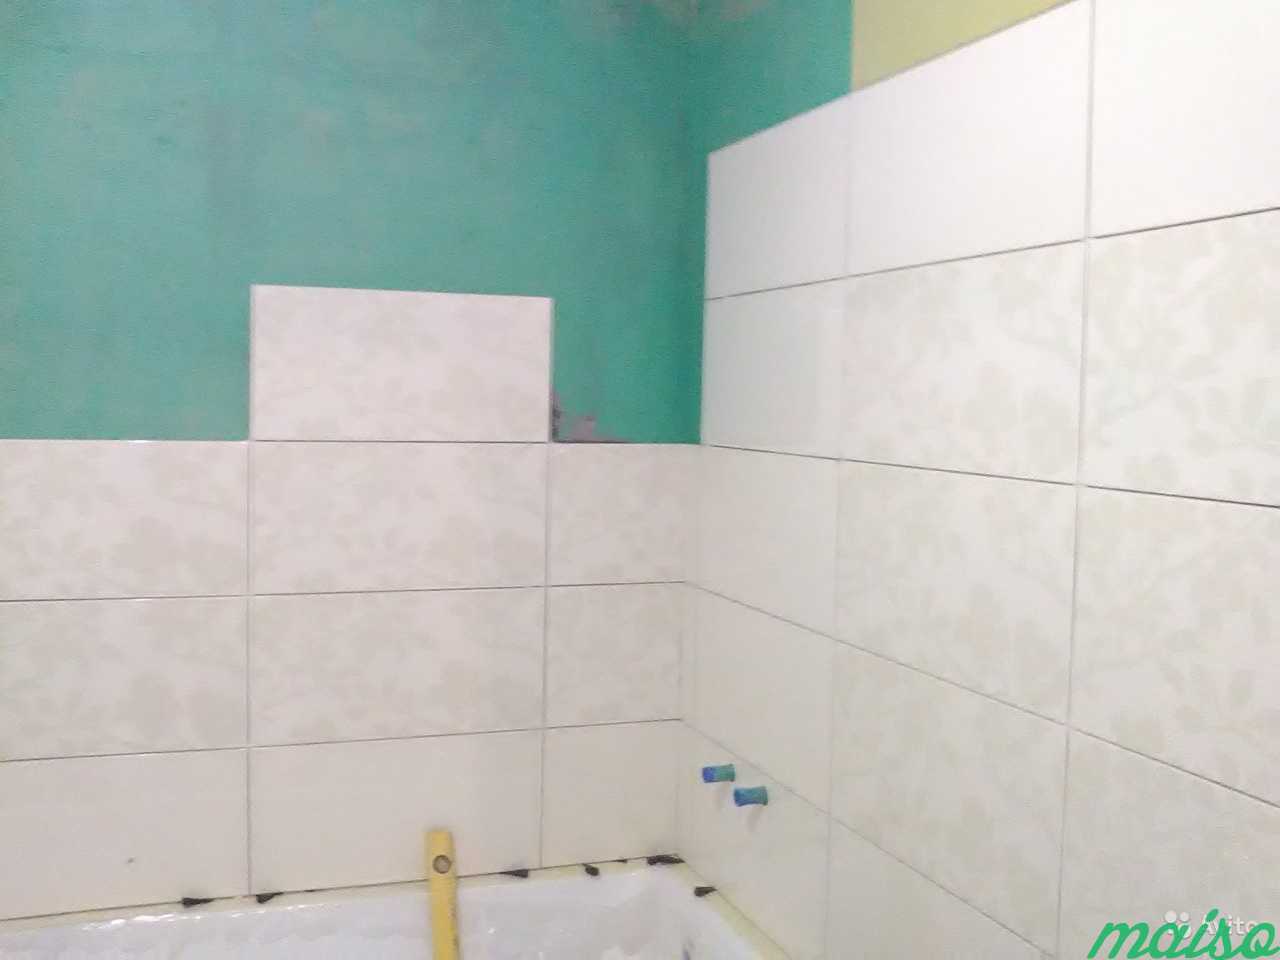 Комплексный ремонт ванной. спб, Ленобласть в Санкт-Петербурге. Фото 2